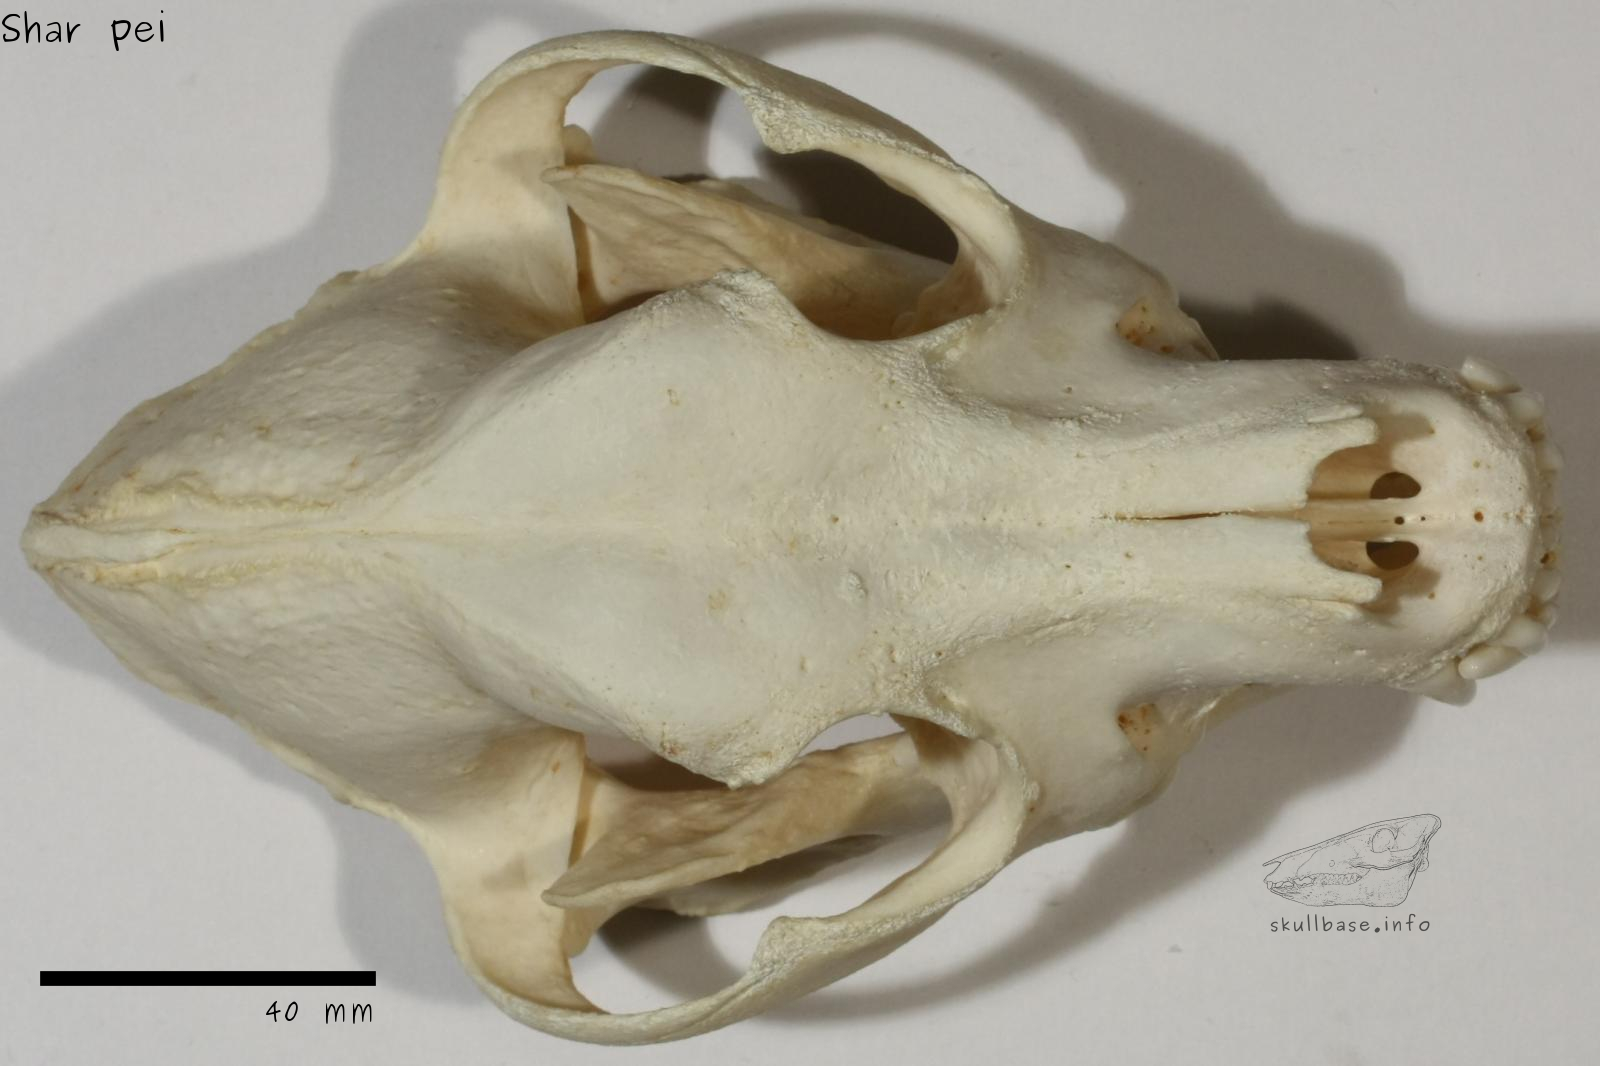 Shar pei (Canis lupus familiaris) skull dorsal view